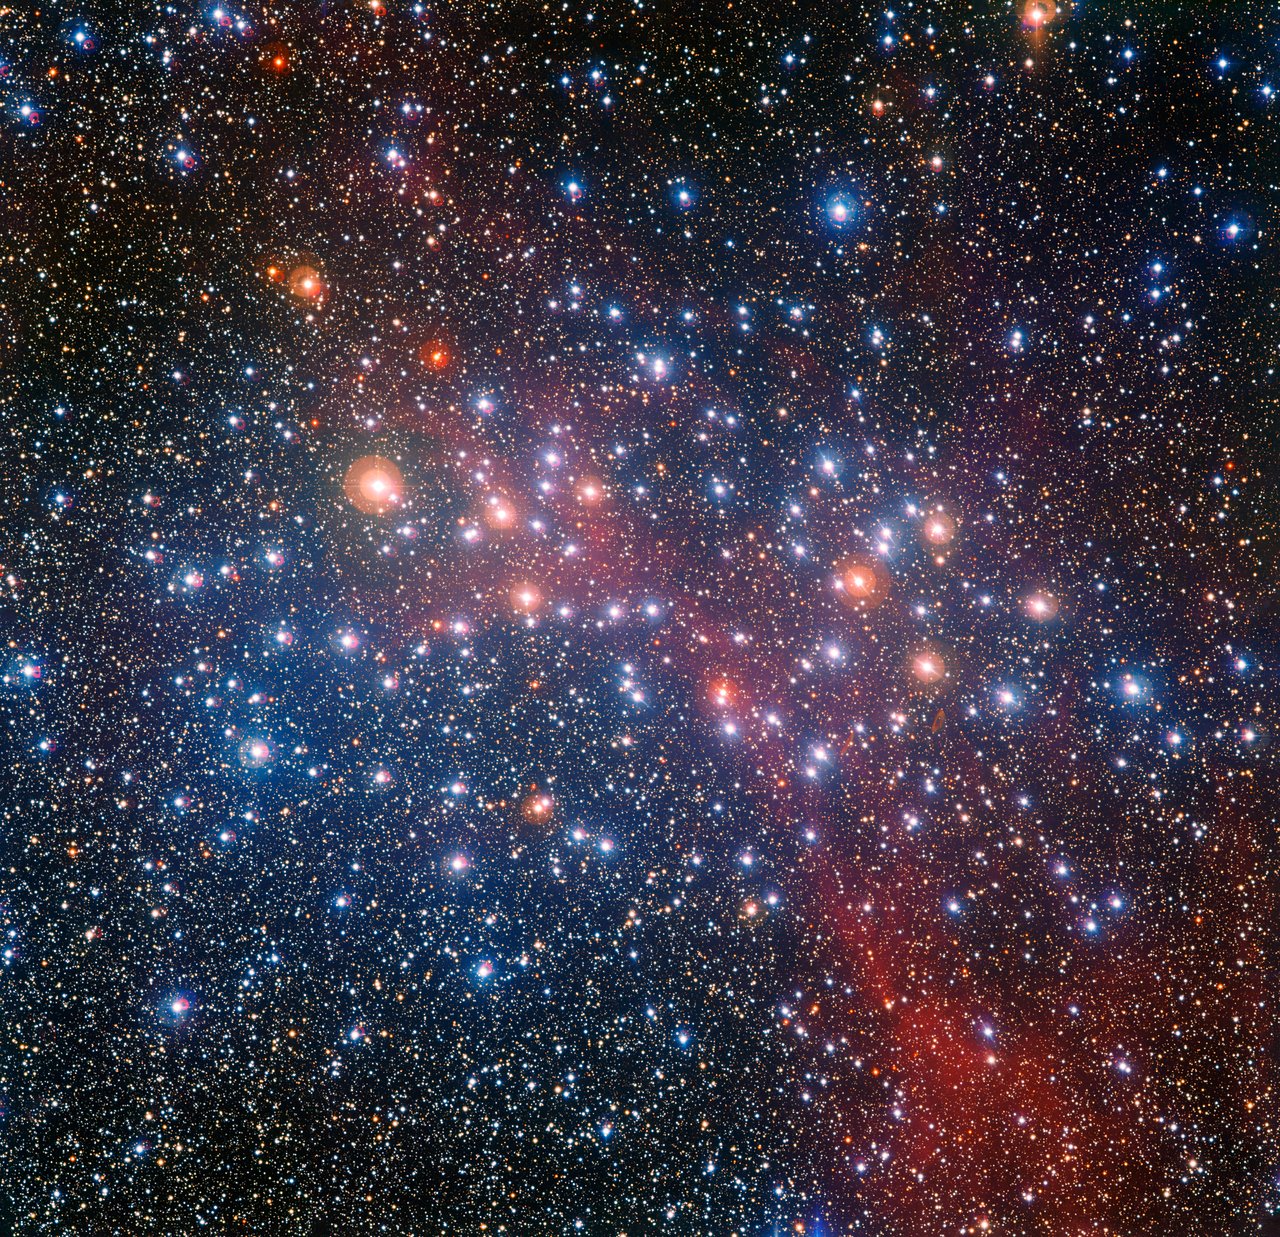 El telescopio MPG/ESO de 2,2 metros, instalado en el Observatorio La Silla de ESO, en Chile, ha captado una colorida imagen del brillante cúmulo estelar NGC 3532. Algunas de las estrellas aún brillan con un color azulado, lo cual nos dice que están calientes, pero muchas de las estrellas más masivas se han convertido en gigantes rojas y resplandecen en ricas tonalidades anaranjadas.